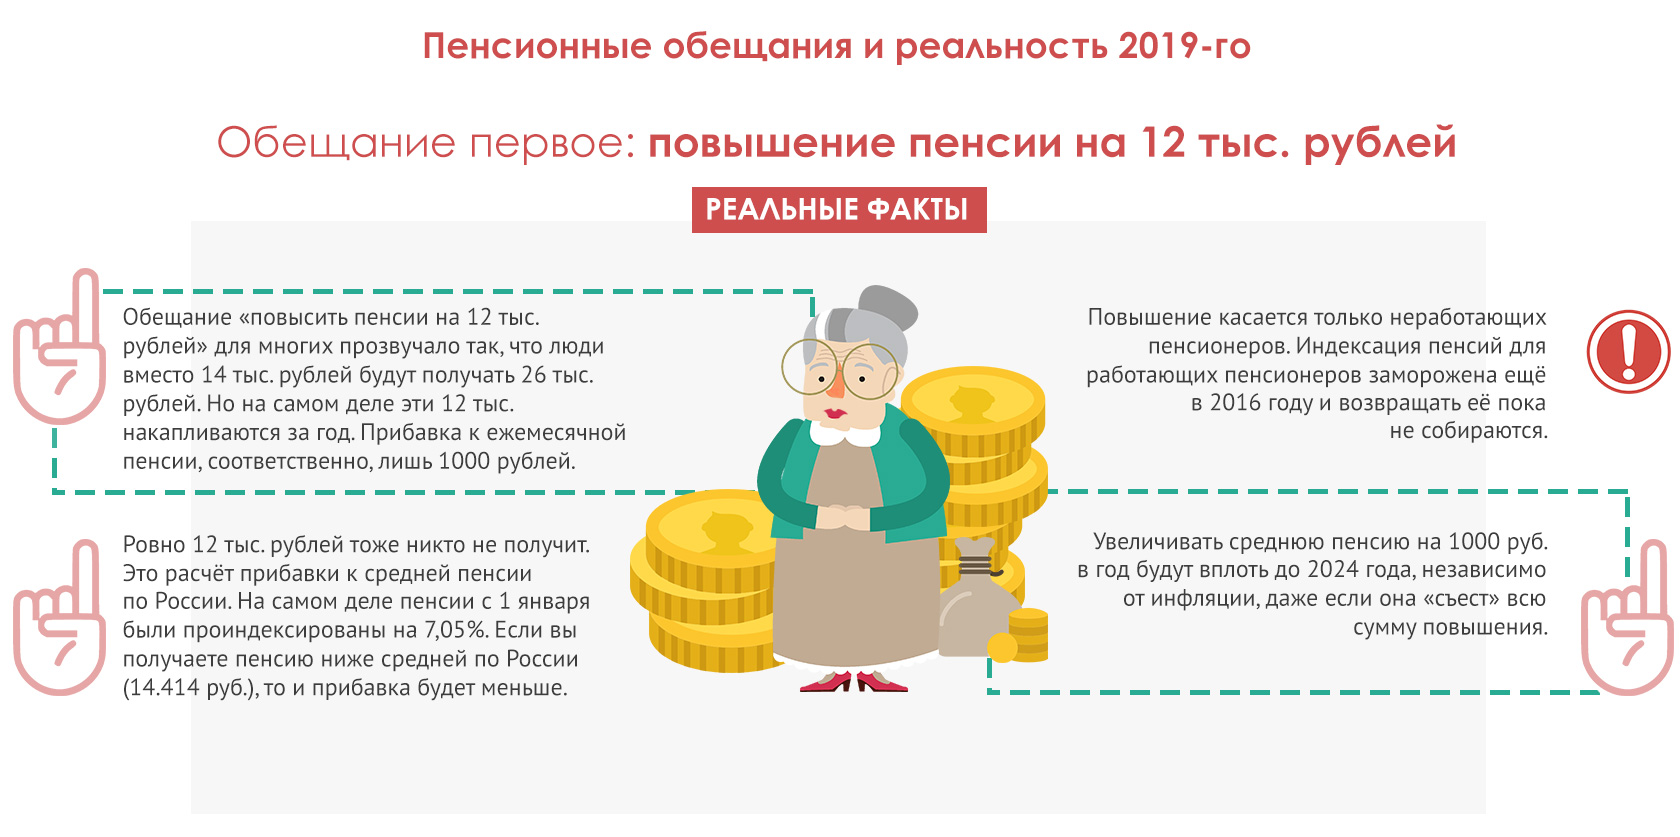 Повышение пенсии ниже инфляции. Как накопить на пенсию самостоятельно. Как самому позаботиться о пенсии?. Проблема низких пенсий в России. Получение пенсии это распределение.